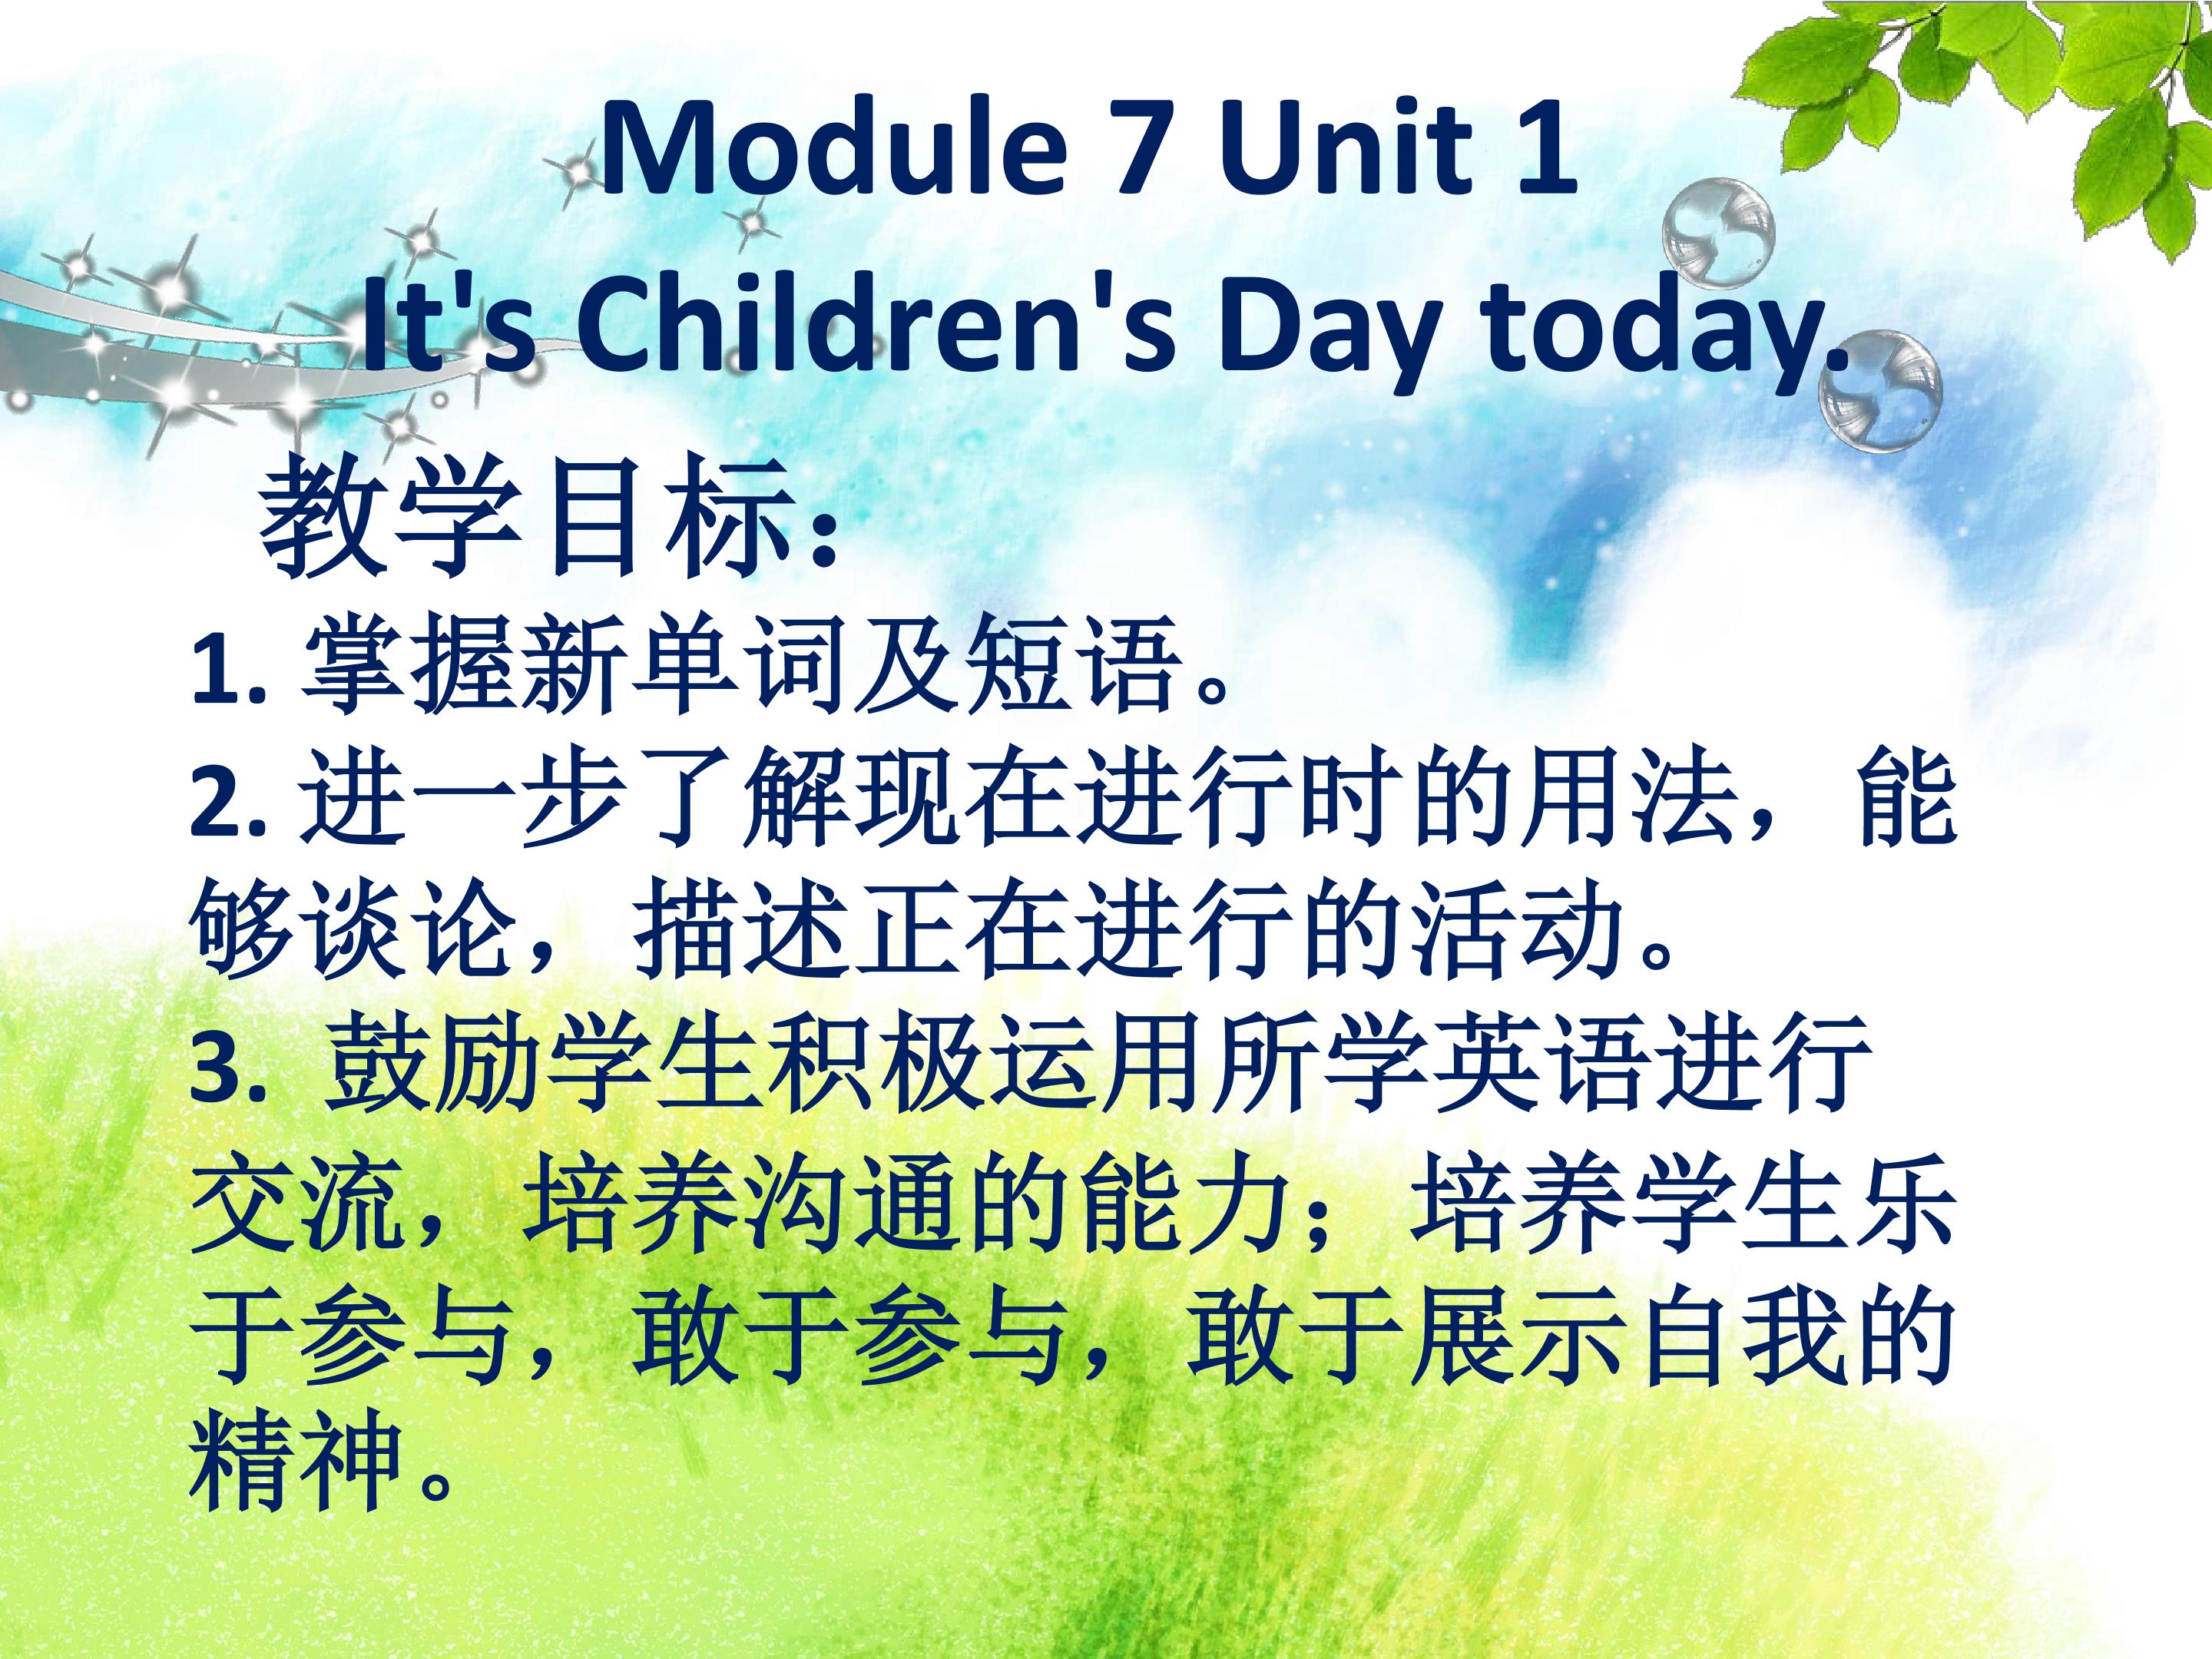 Module 10 unit 1 It's Children's Day .